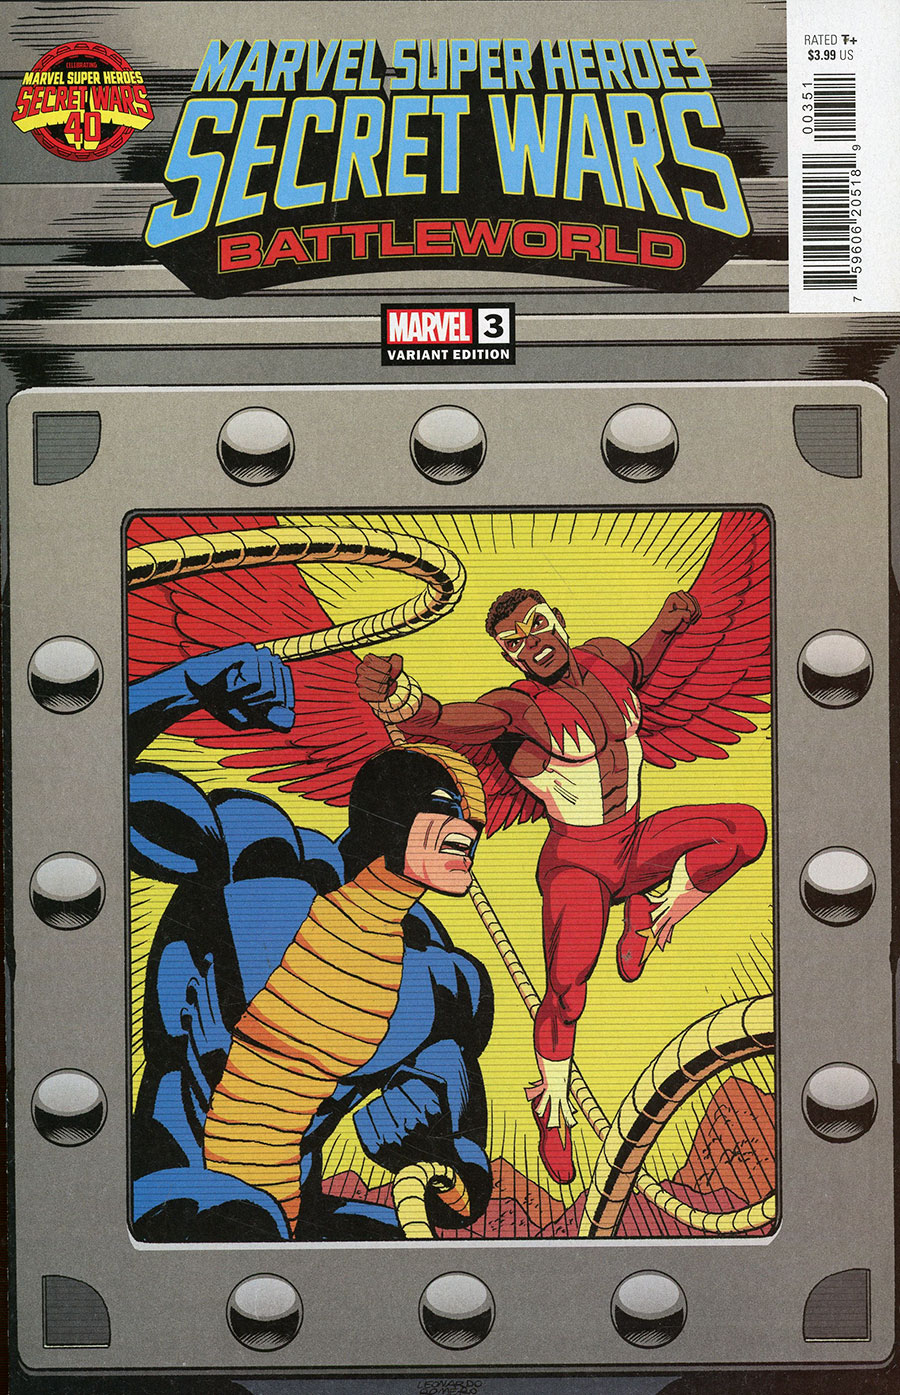 Marvel Super Heroes Secret Wars Battleworld #3 Cover E Variant Leonardo Romero Cover